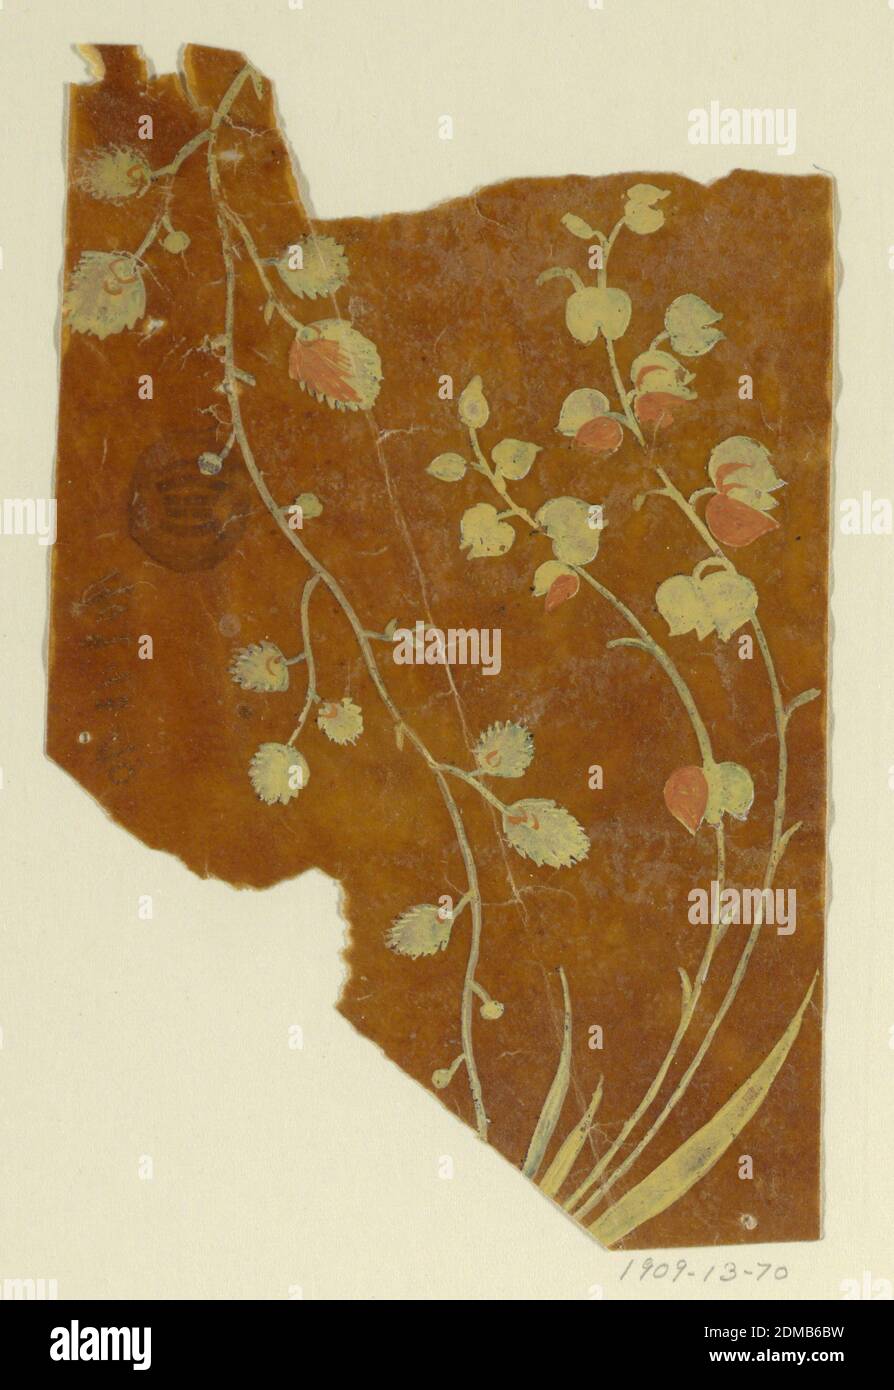 Disegno di un tessuto tessuto, frammento, gouache gialle e laterizie su carta da ricalco oleosa, un briciolo di foglia appeso e una pianta del giglio della valle., Francia, 1815-1840, disegno Foto Stock